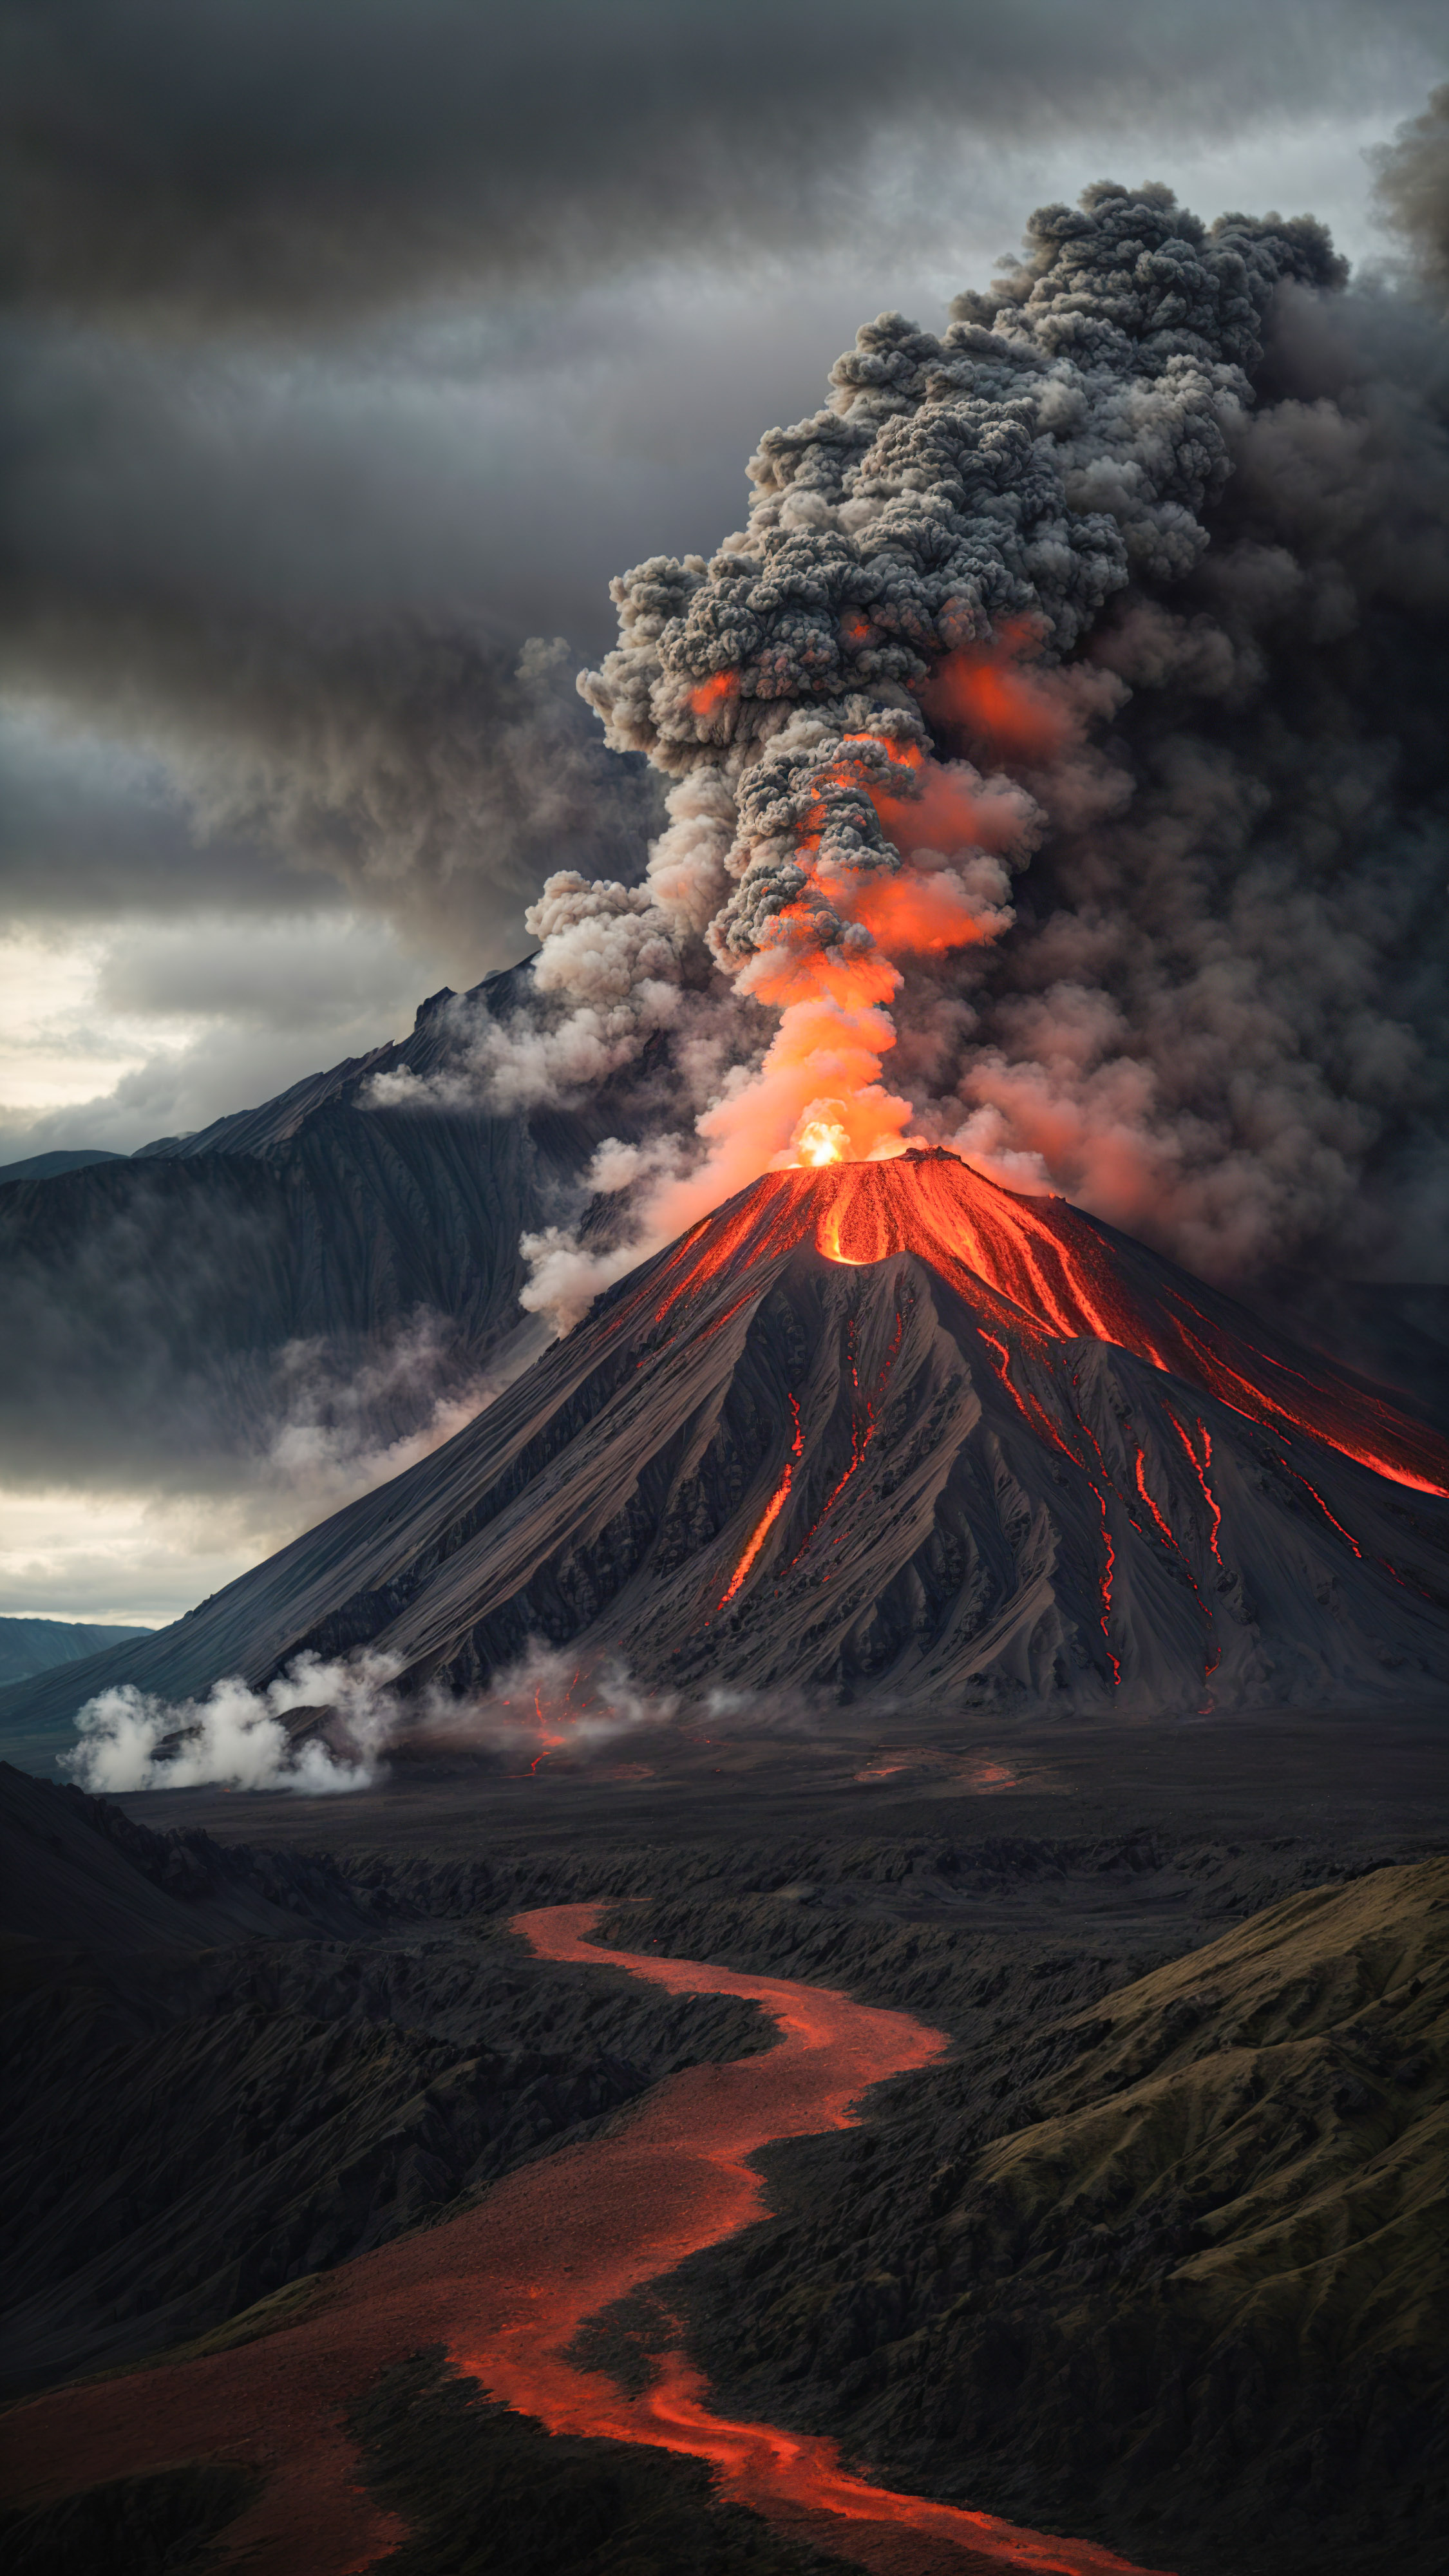 Vivez la puissance de la nature avec un fond de montagne sombre dépeignant une montagne volcanique avec un cratère fumant et une coulée de lave, sous un ciel sombre et nuageux.